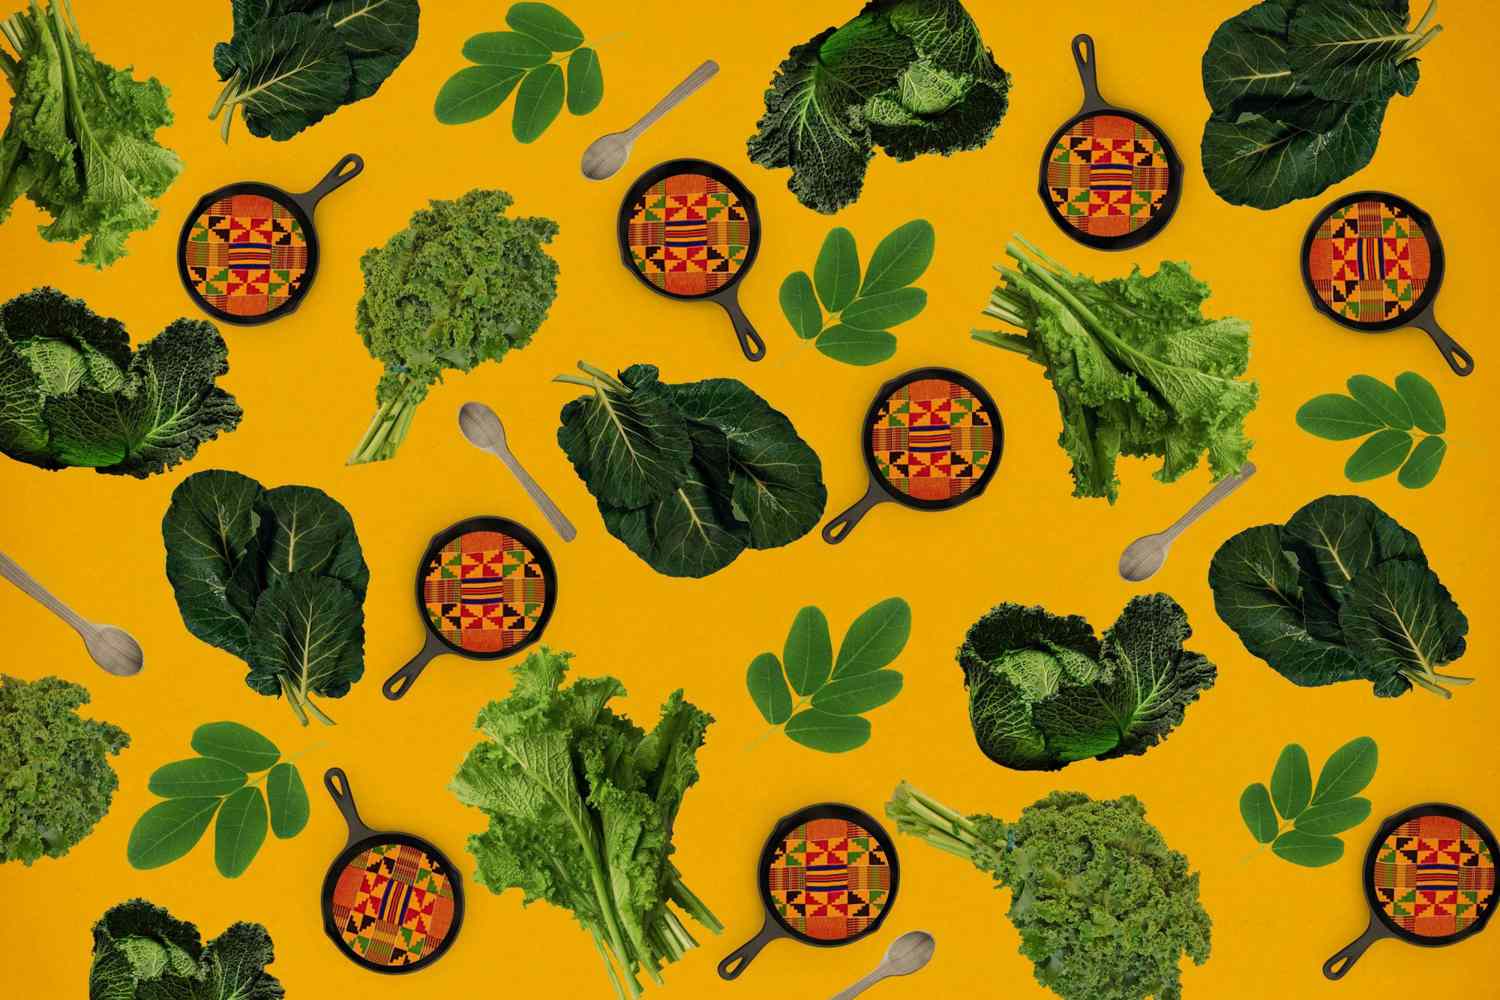 Collage de dieta del patrimonio africano con varios verdes y patrones